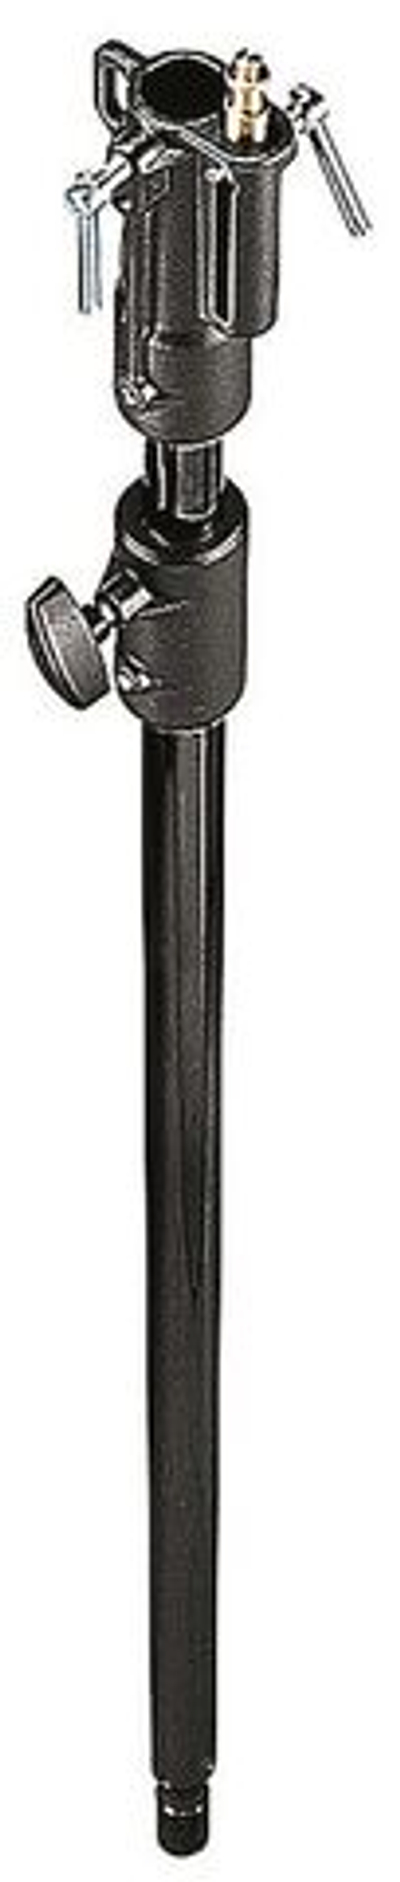 Удлинитель стойки Manfrotto 142B алюминиевый чёрный, 2-секционный 1,2-2,1 м